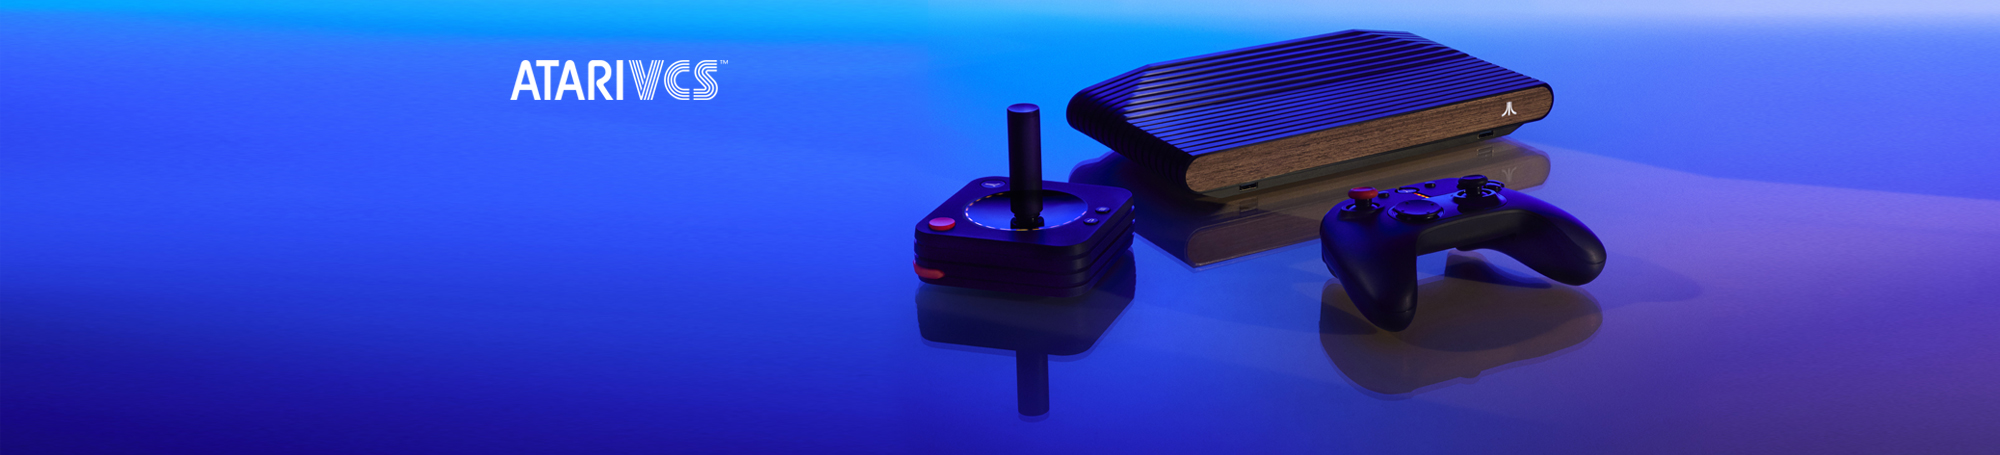 Atari VCS video game console, joystick and controller